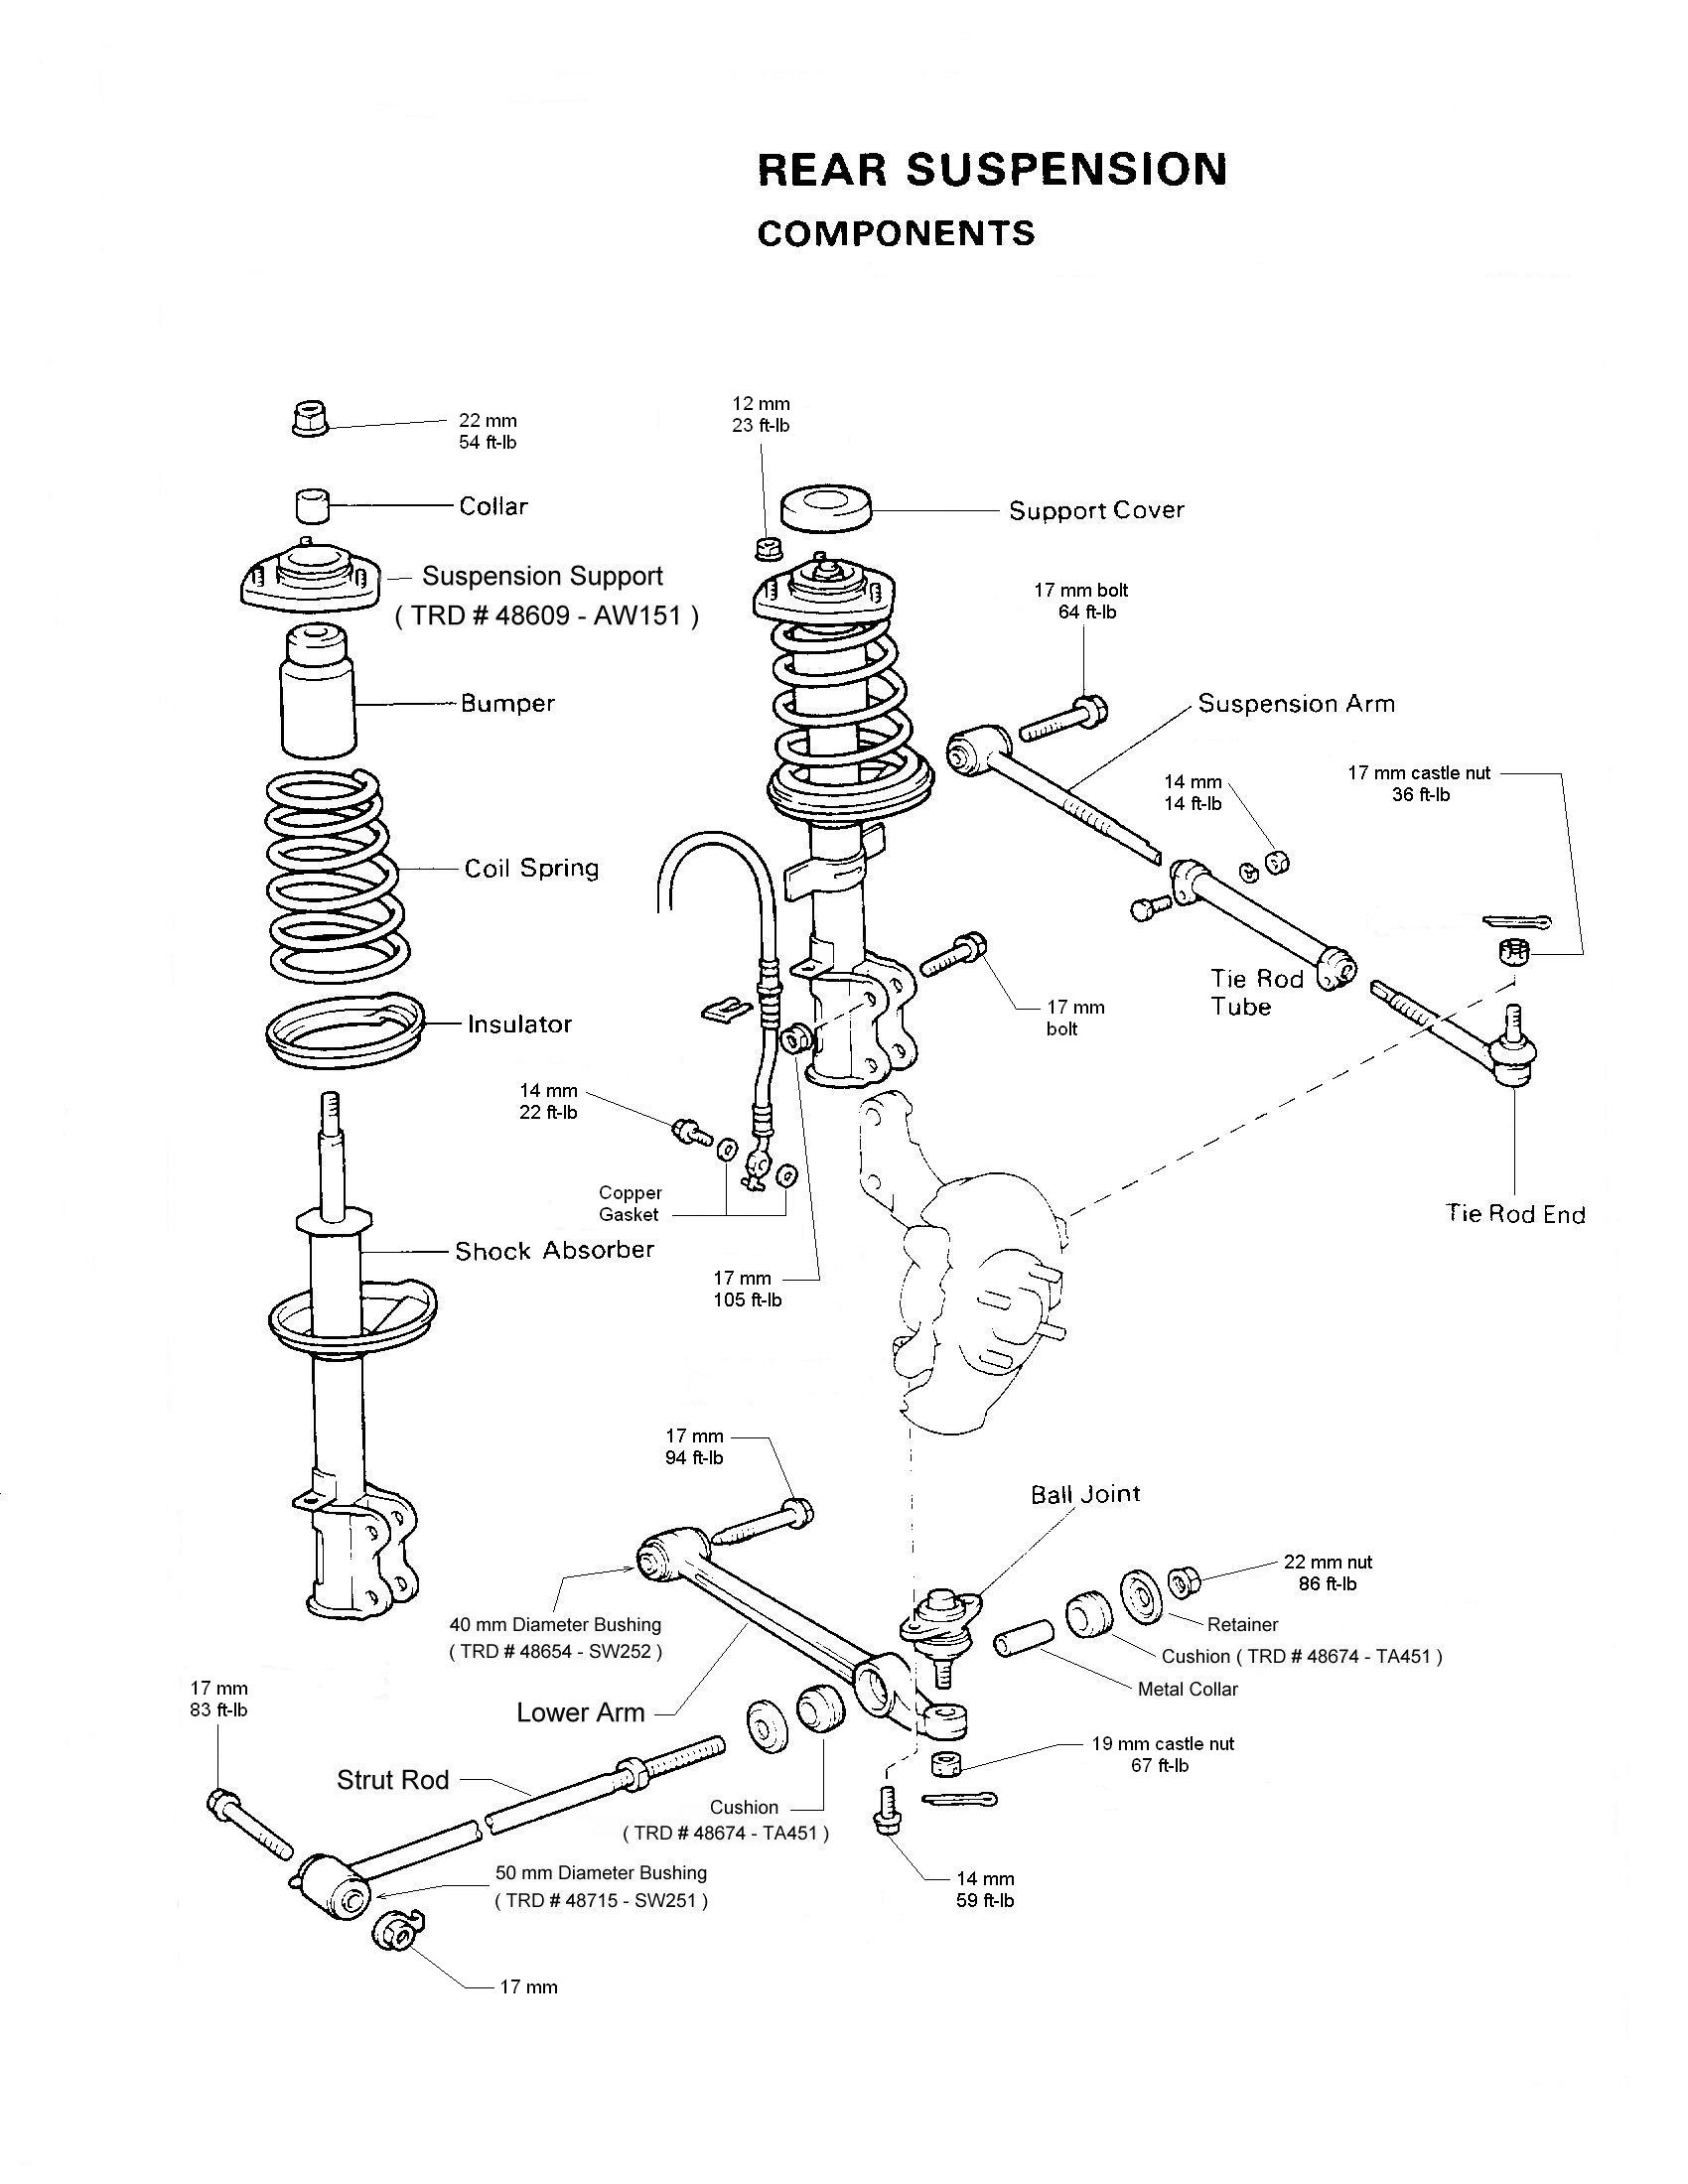 Rear suspension diagram